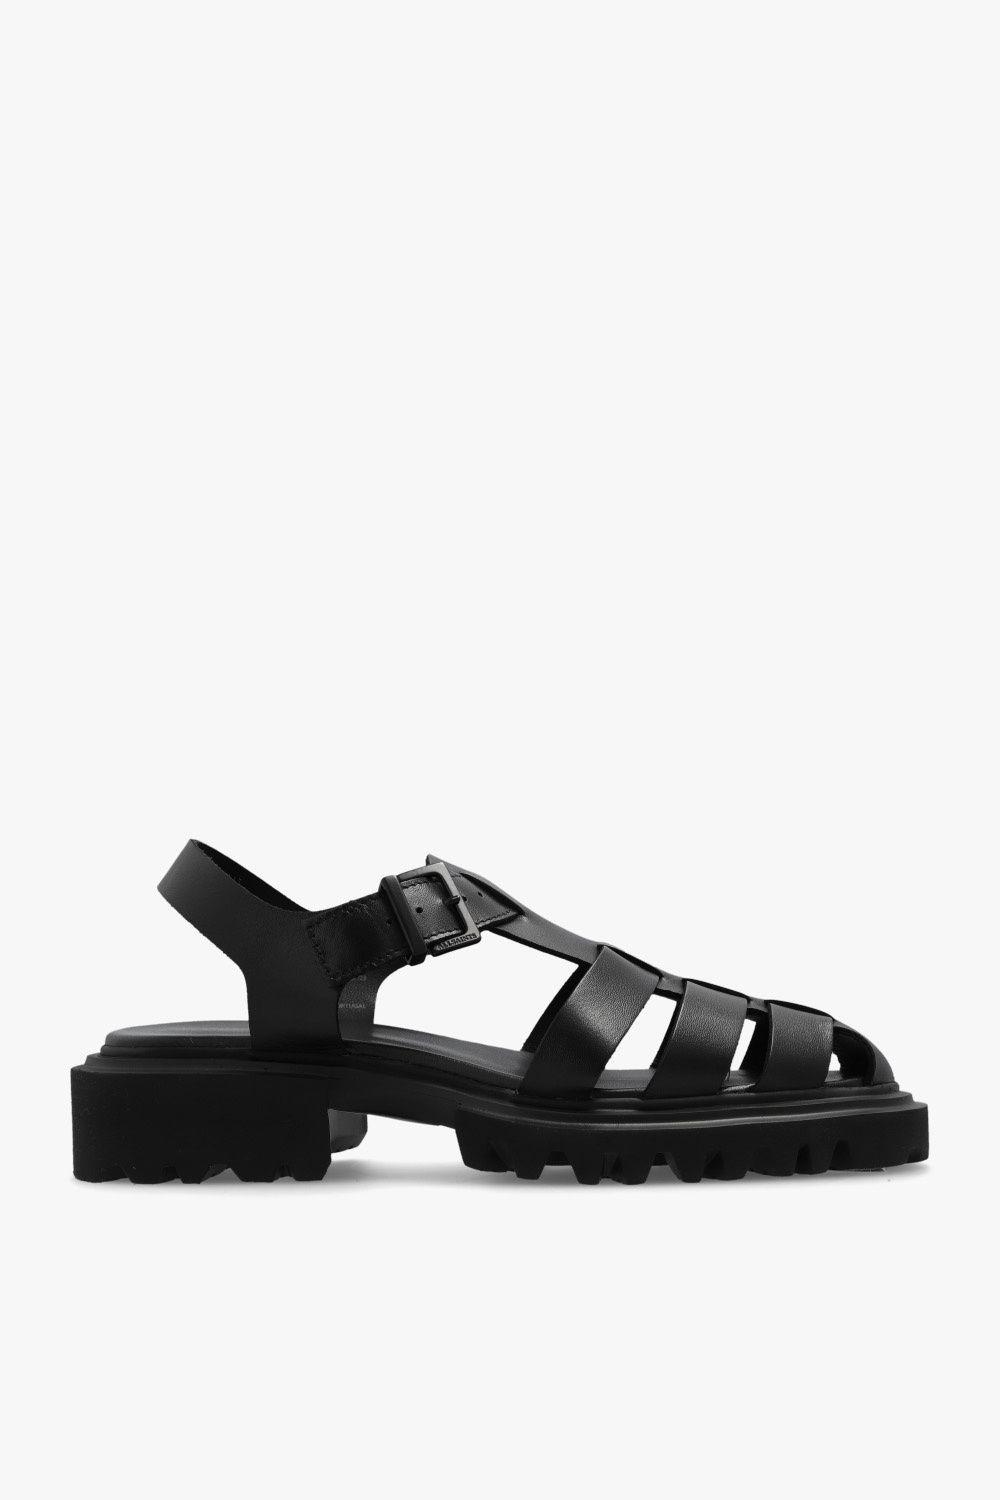 AllSaints 'nessie' Sandals in Black | Lyst